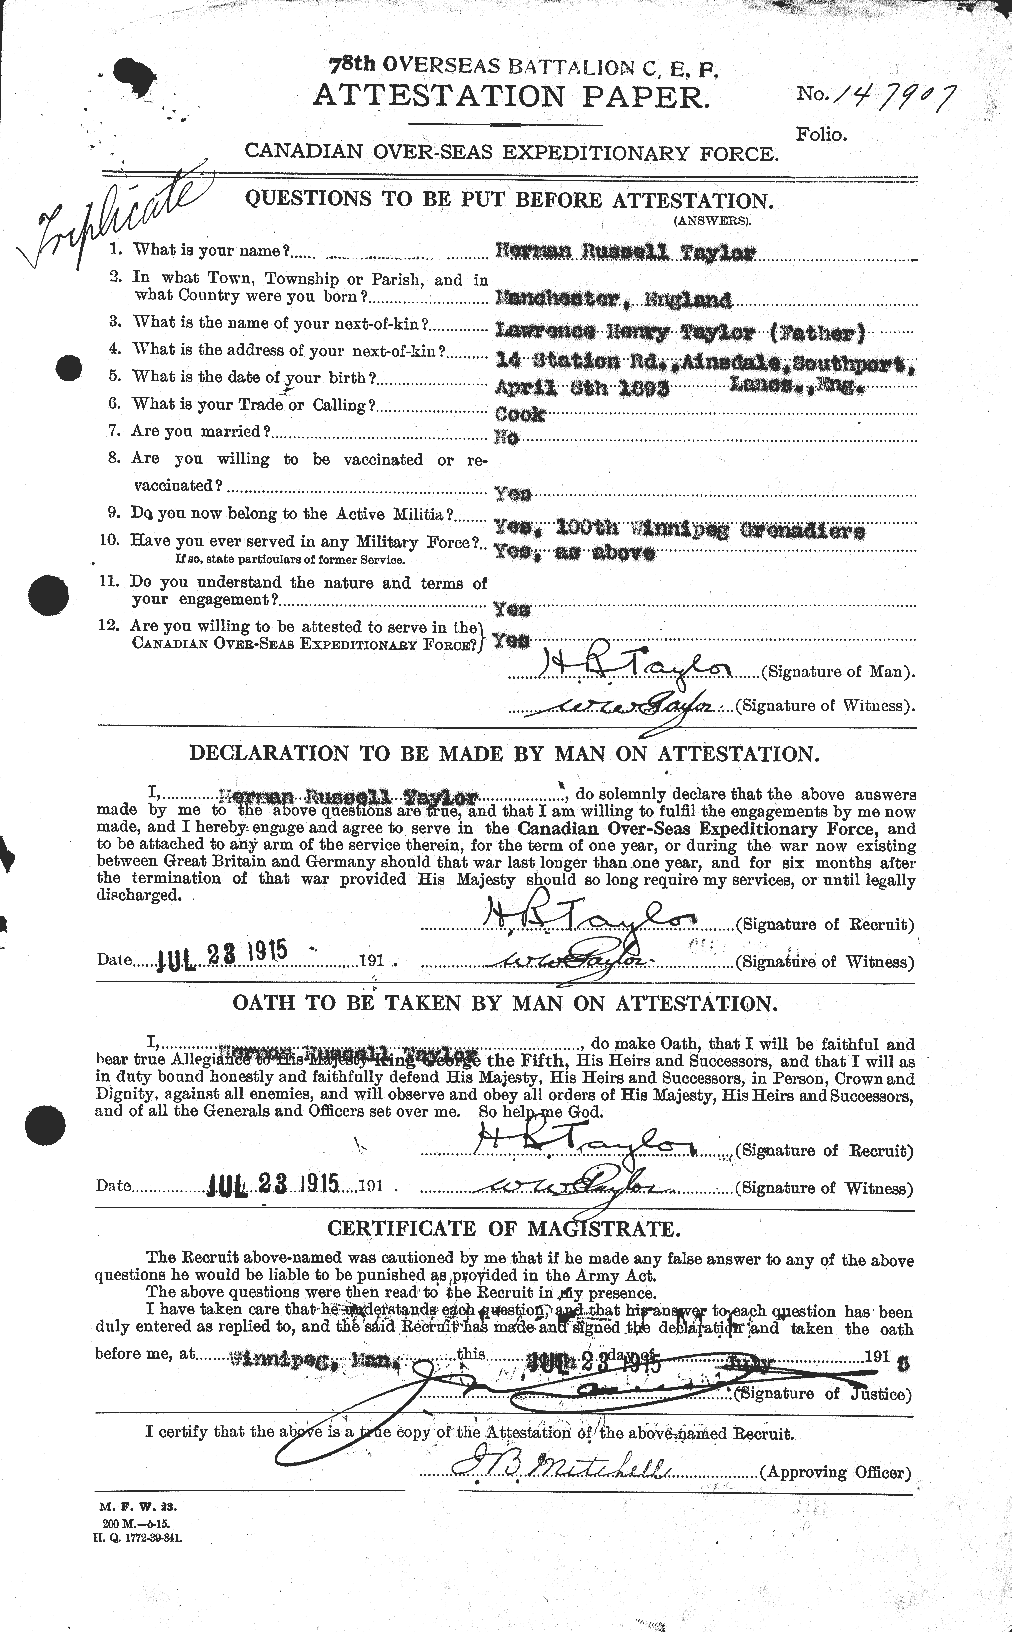 Dossiers du Personnel de la Première Guerre mondiale - CEC 626585a